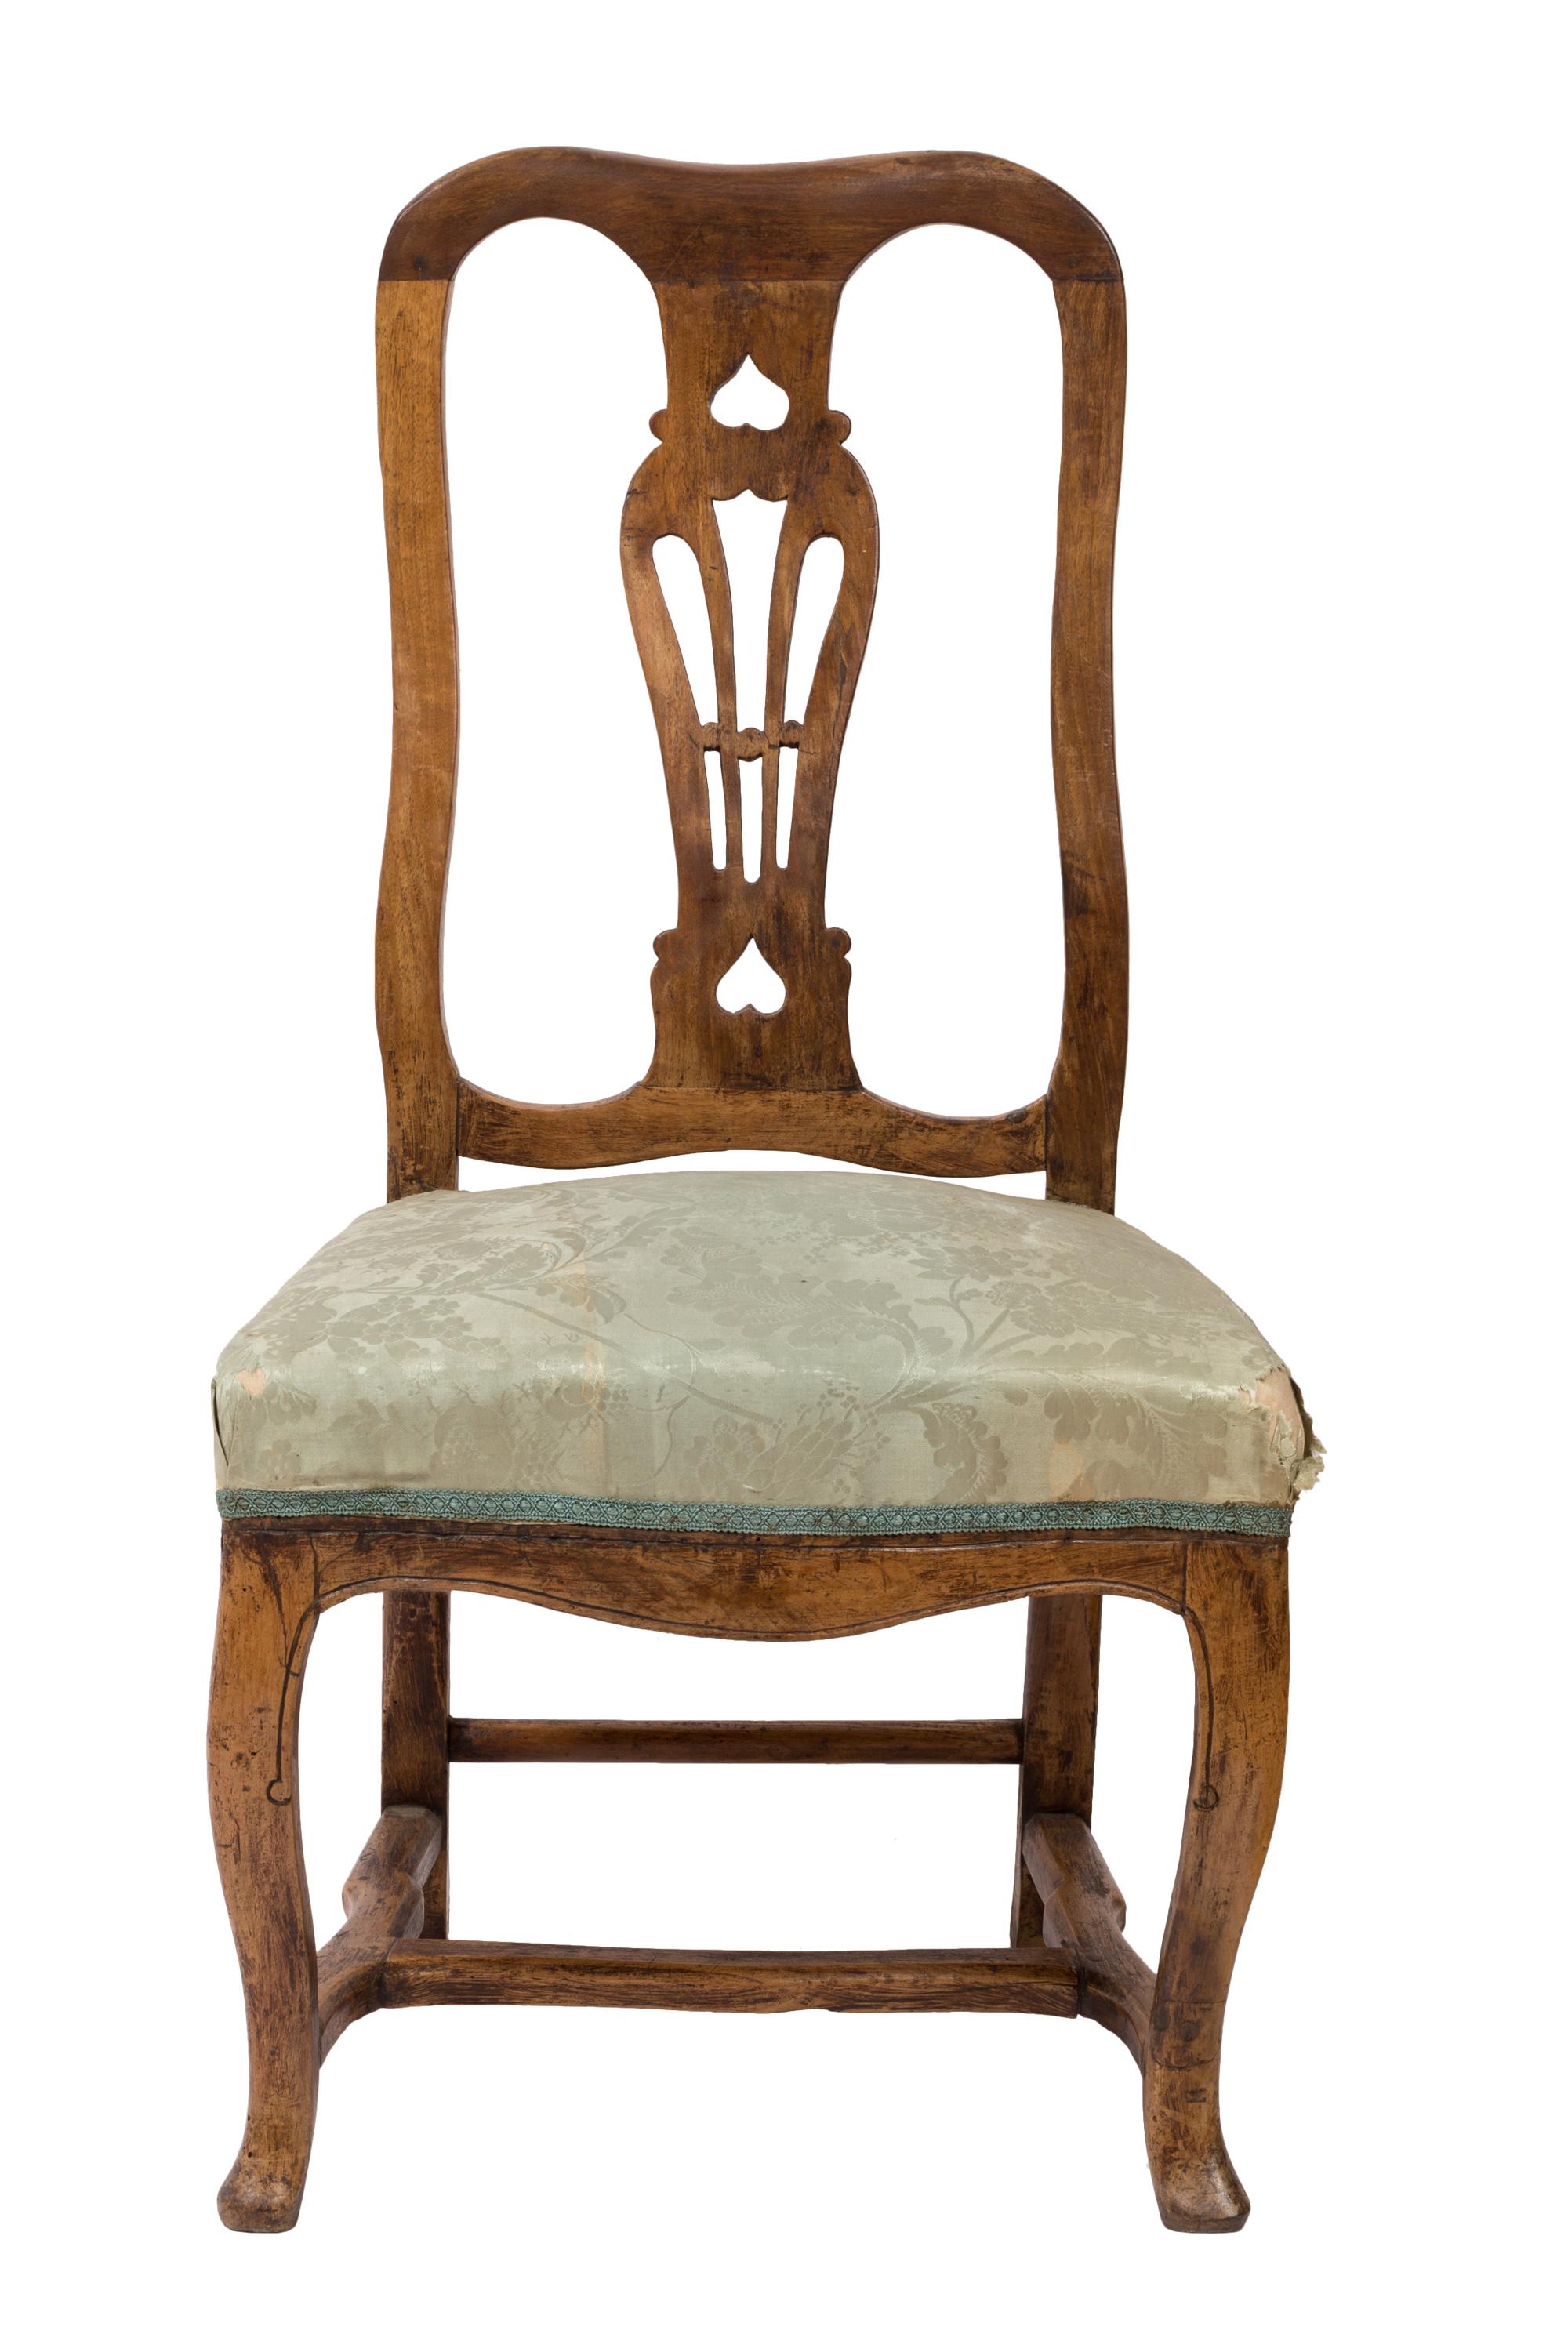 Ein passender Satz von vier Beistellstühlen im Queen-Anne-Stil, mit urnenförmig durchbrochenen Rückenlehnen. Die Holzmöbel haben einen großartigen Charakter - gut konstruiert und massiv, mit einer rustikalen, handgefertigten Qualität. Einige leichte